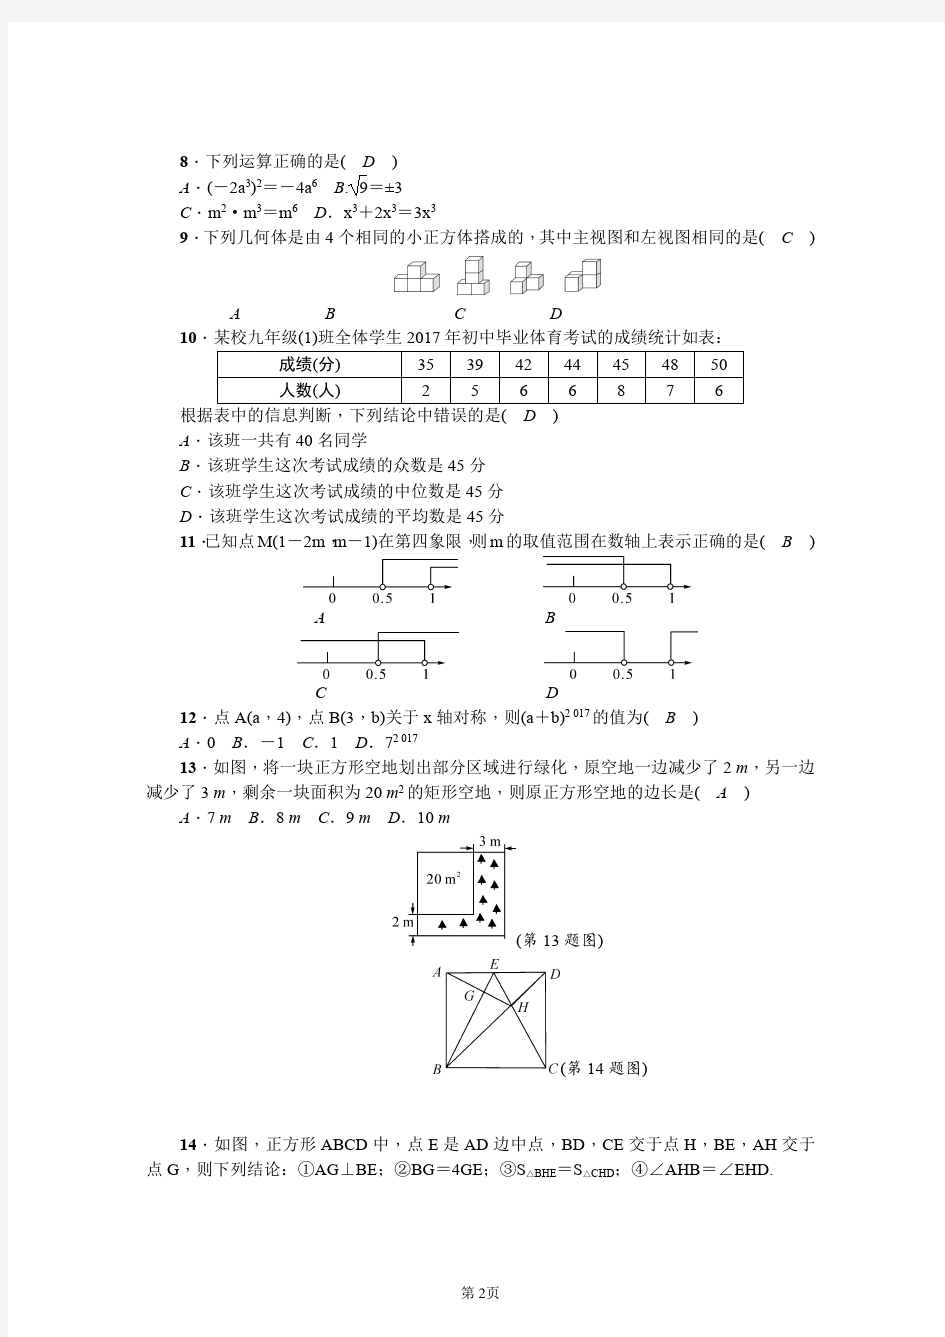 2018年云南省初中学业水平考试模拟预测题(2)含答案